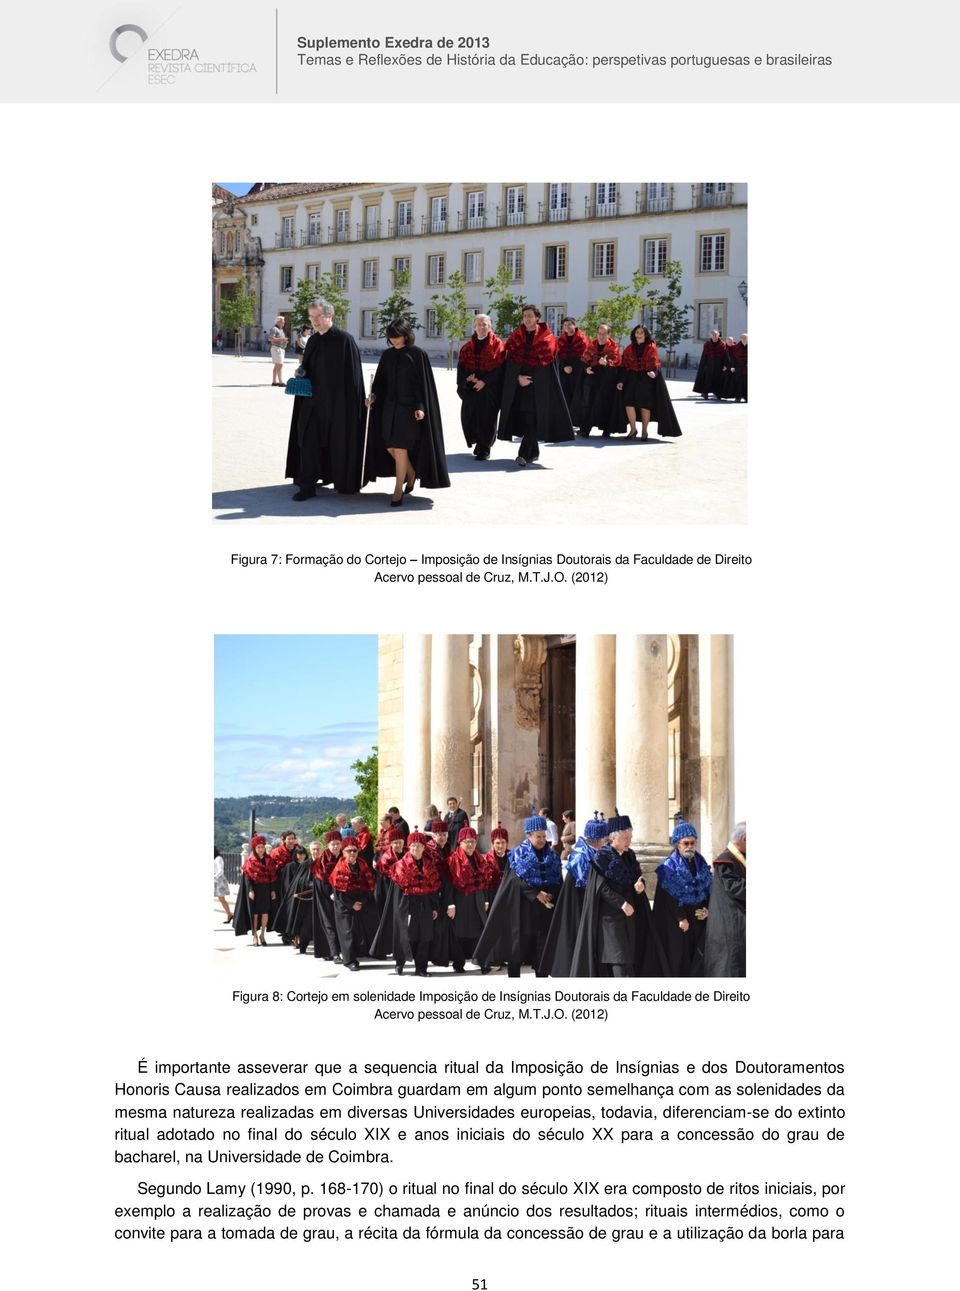 (2012) É importante asseverar que a sequencia ritual da Imposição de Insígnias e dos Doutoramentos Honoris Causa realizados em Coimbra guardam em algum ponto semelhança com as solenidades da mesma